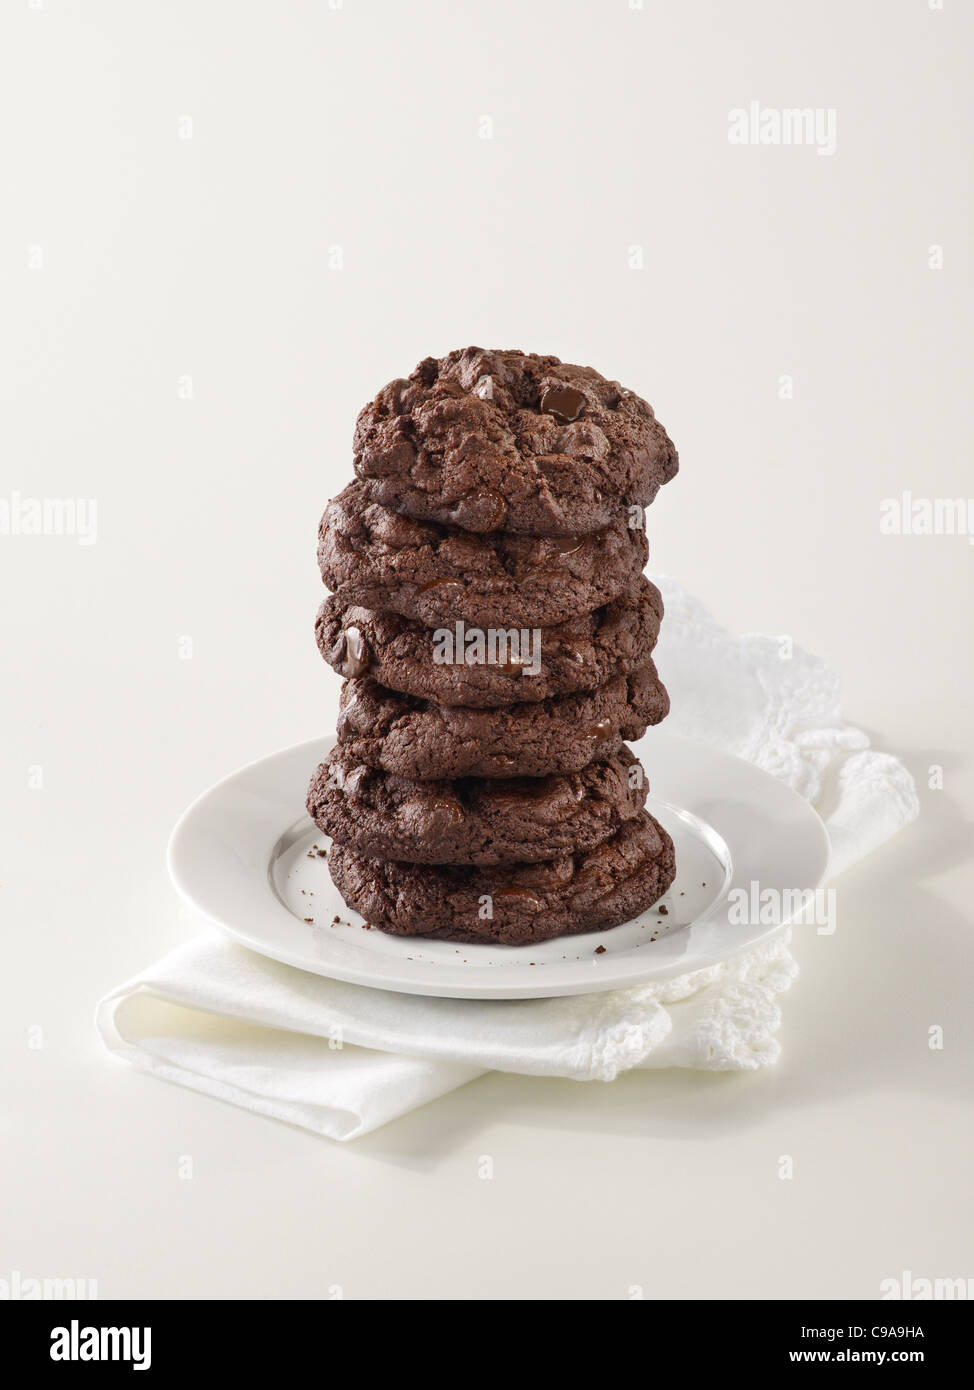 Une grande cheminée de triple gourmet chocolate chip cookies sur une plaque blanche Banque D'Images